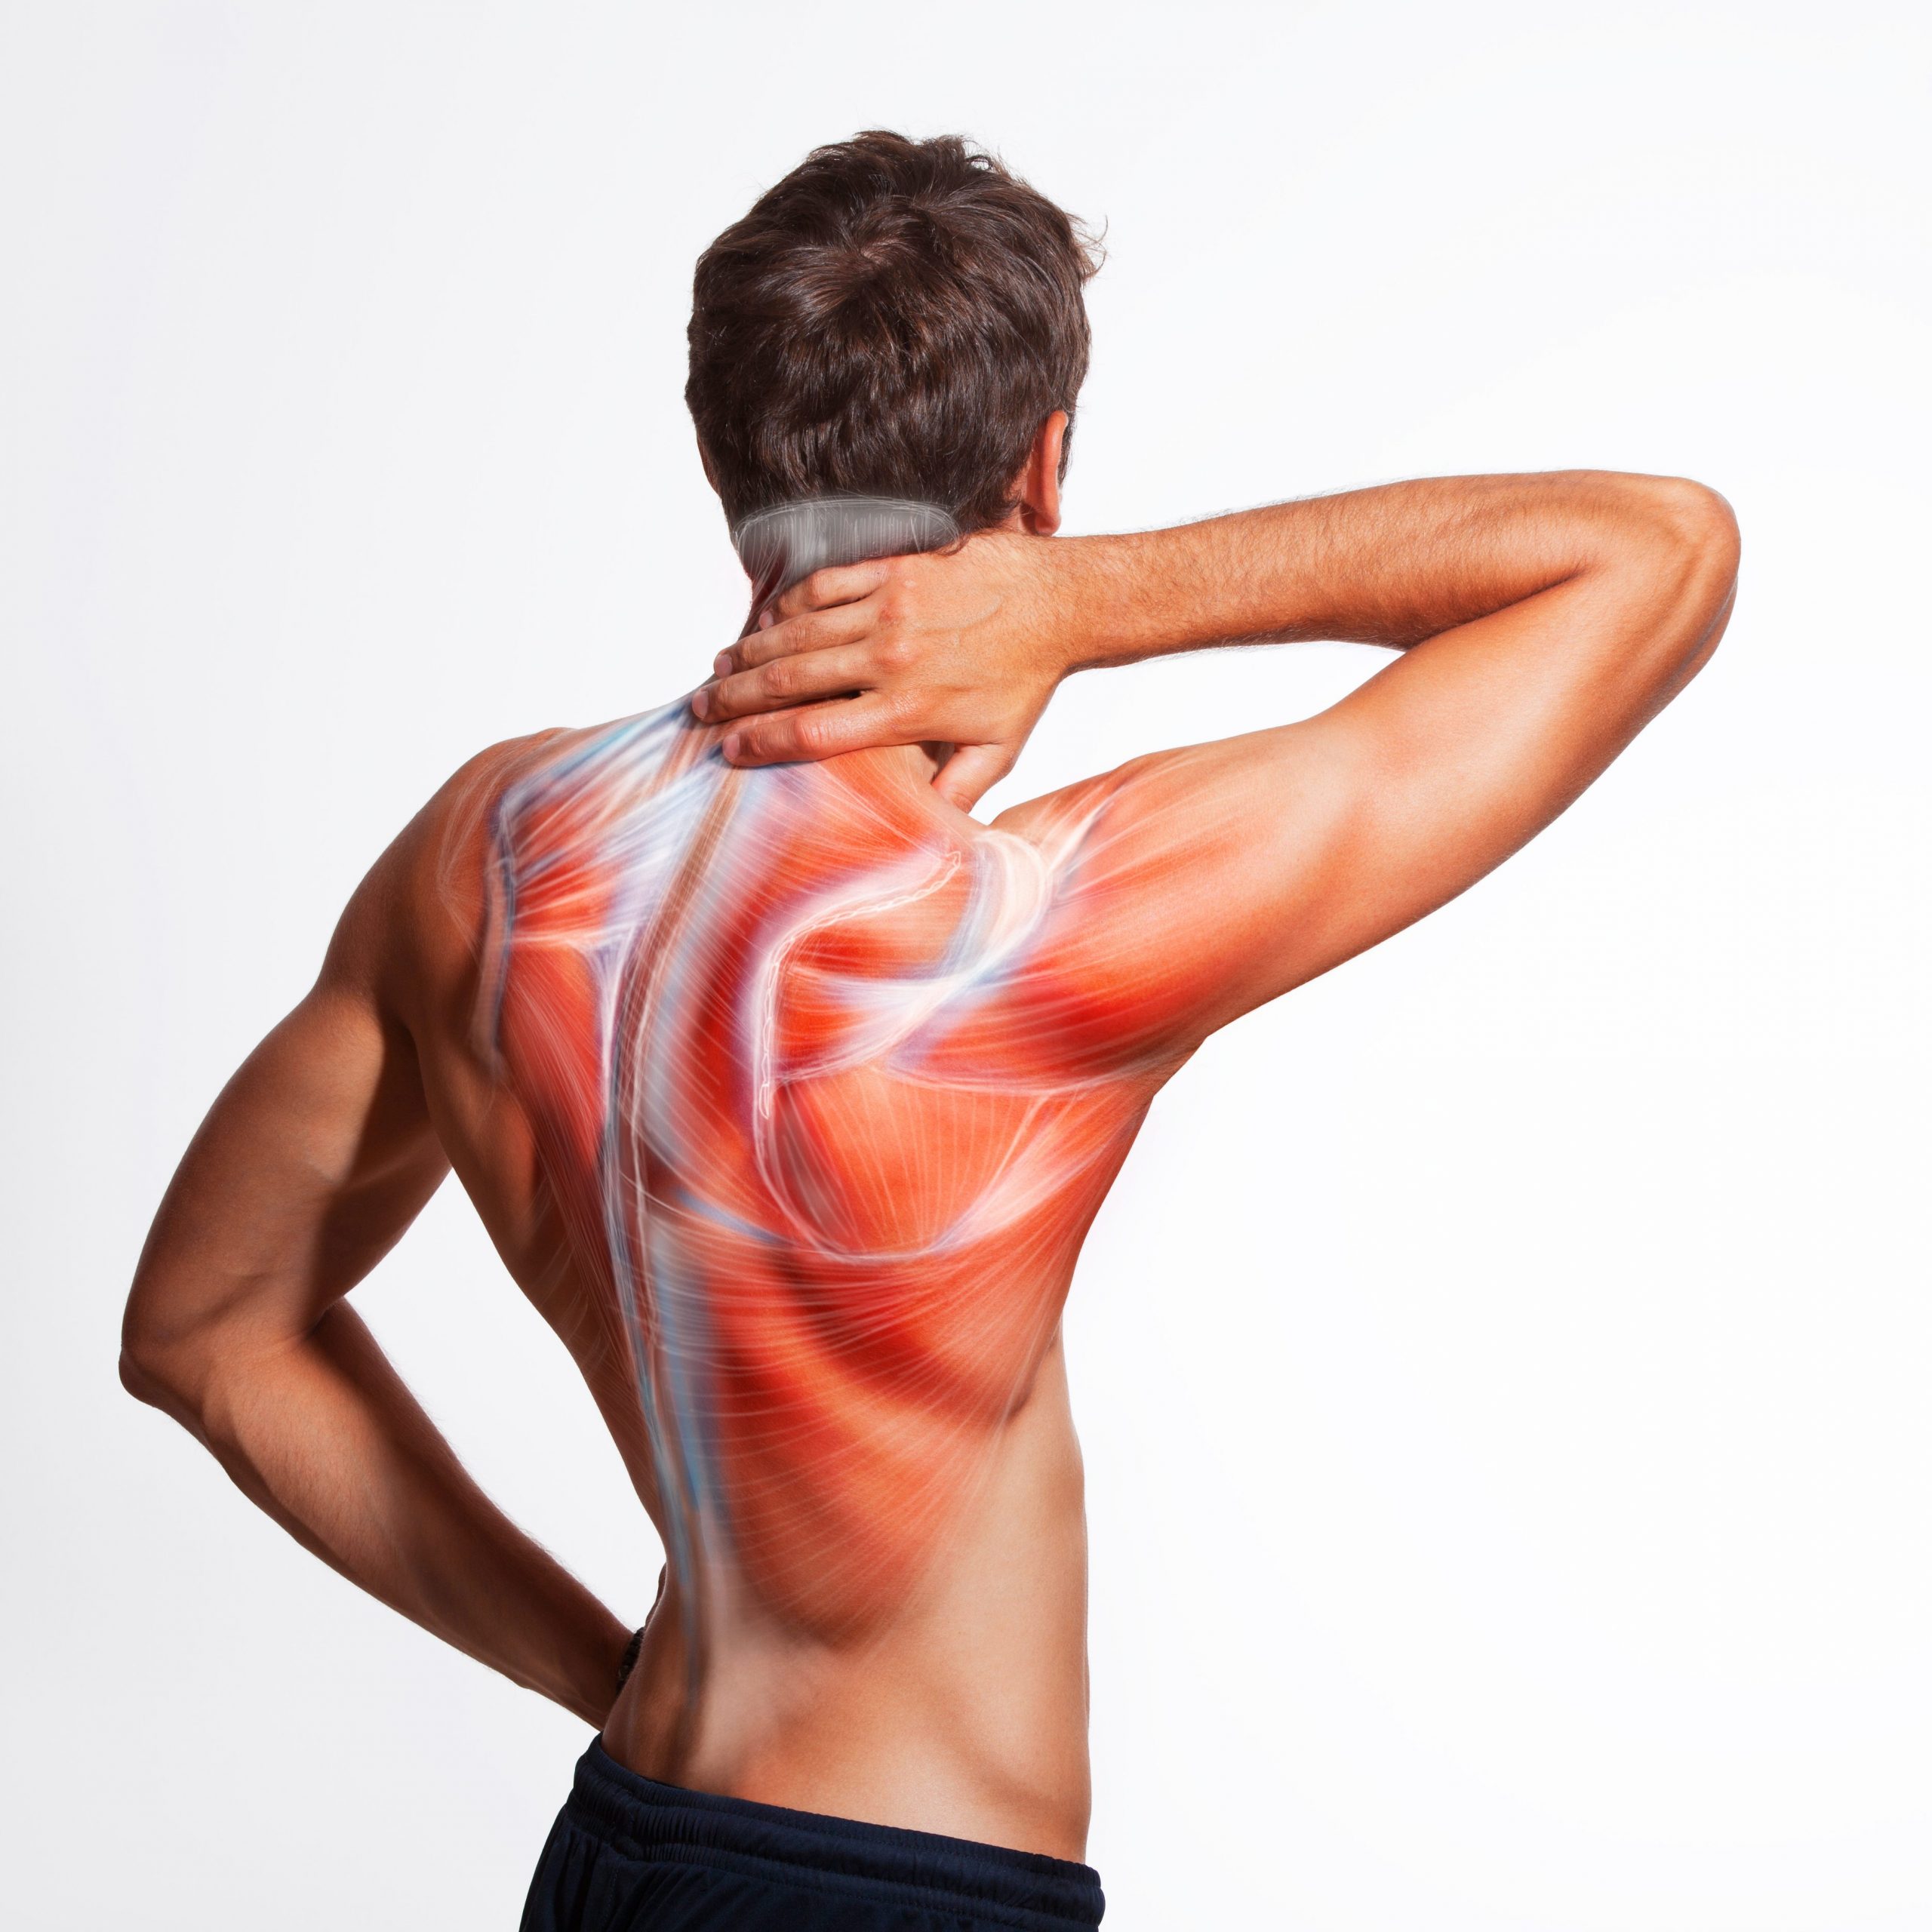 Männerrücken mit grafisch dargestellter Rückenmuskulatur